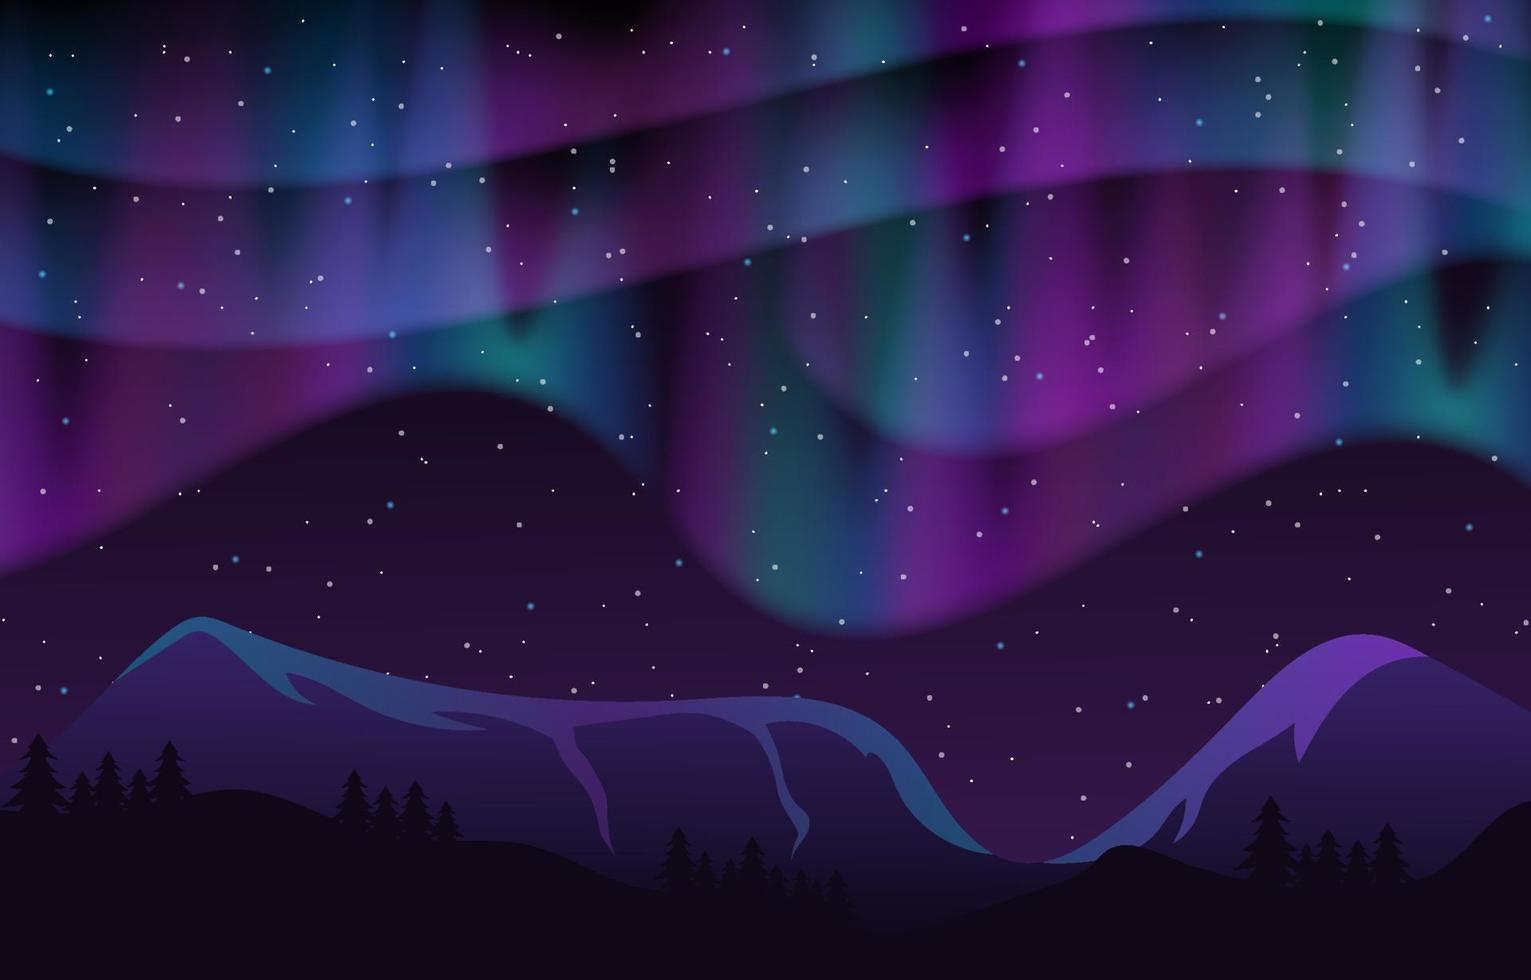 fondo de paisaje de aurora boreal vector